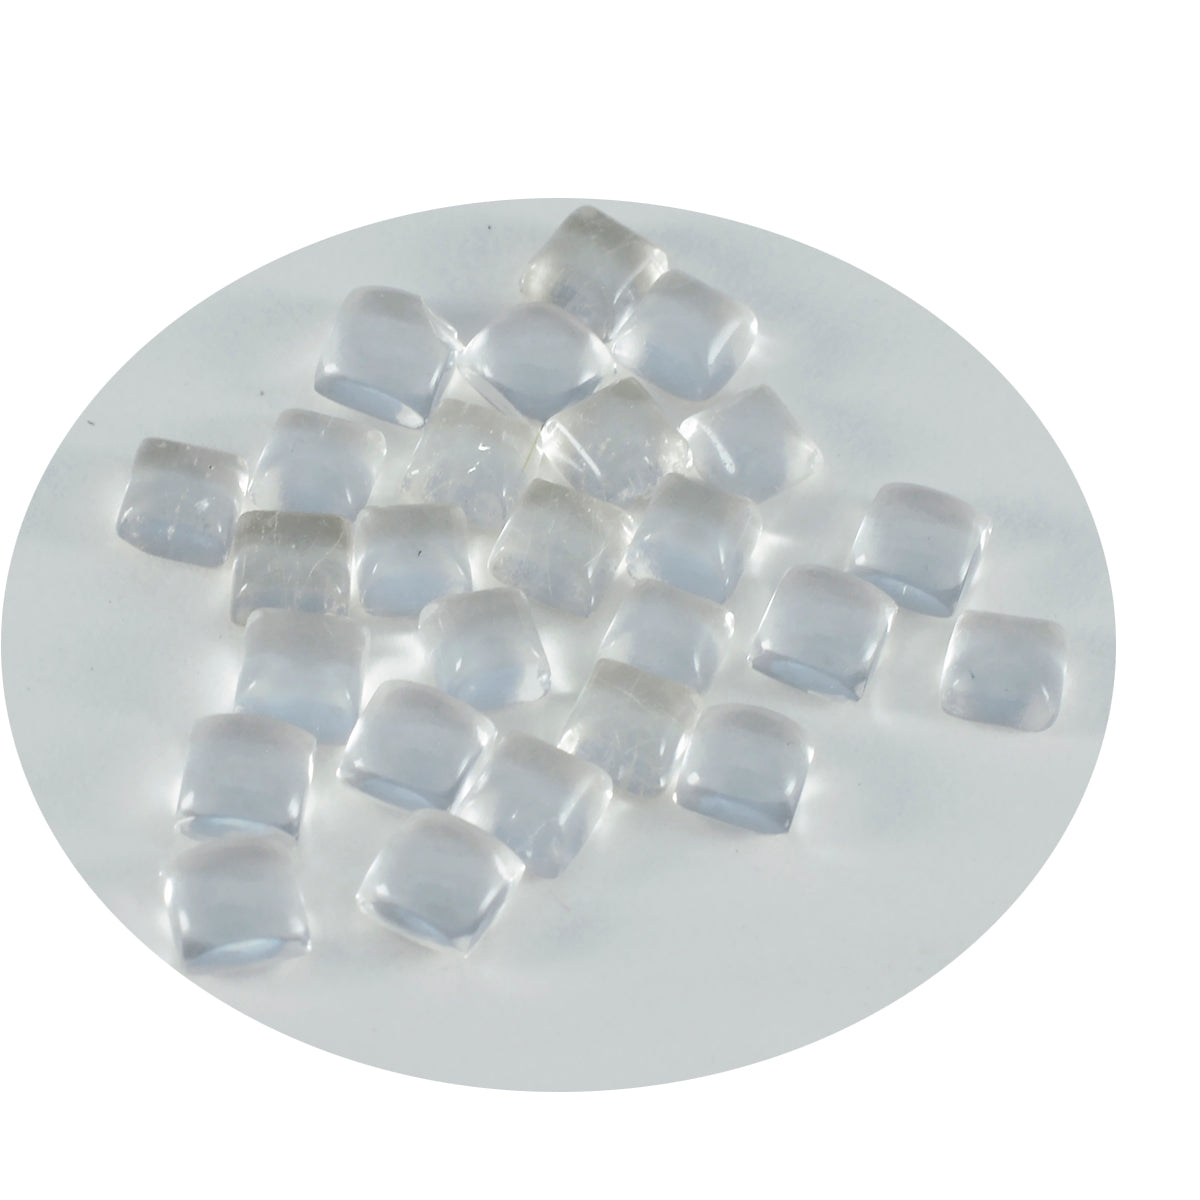 Riyogems 1 pieza cabujón de cuarzo cristal blanco 6x6mm forma cuadrada piedra de excelente calidad